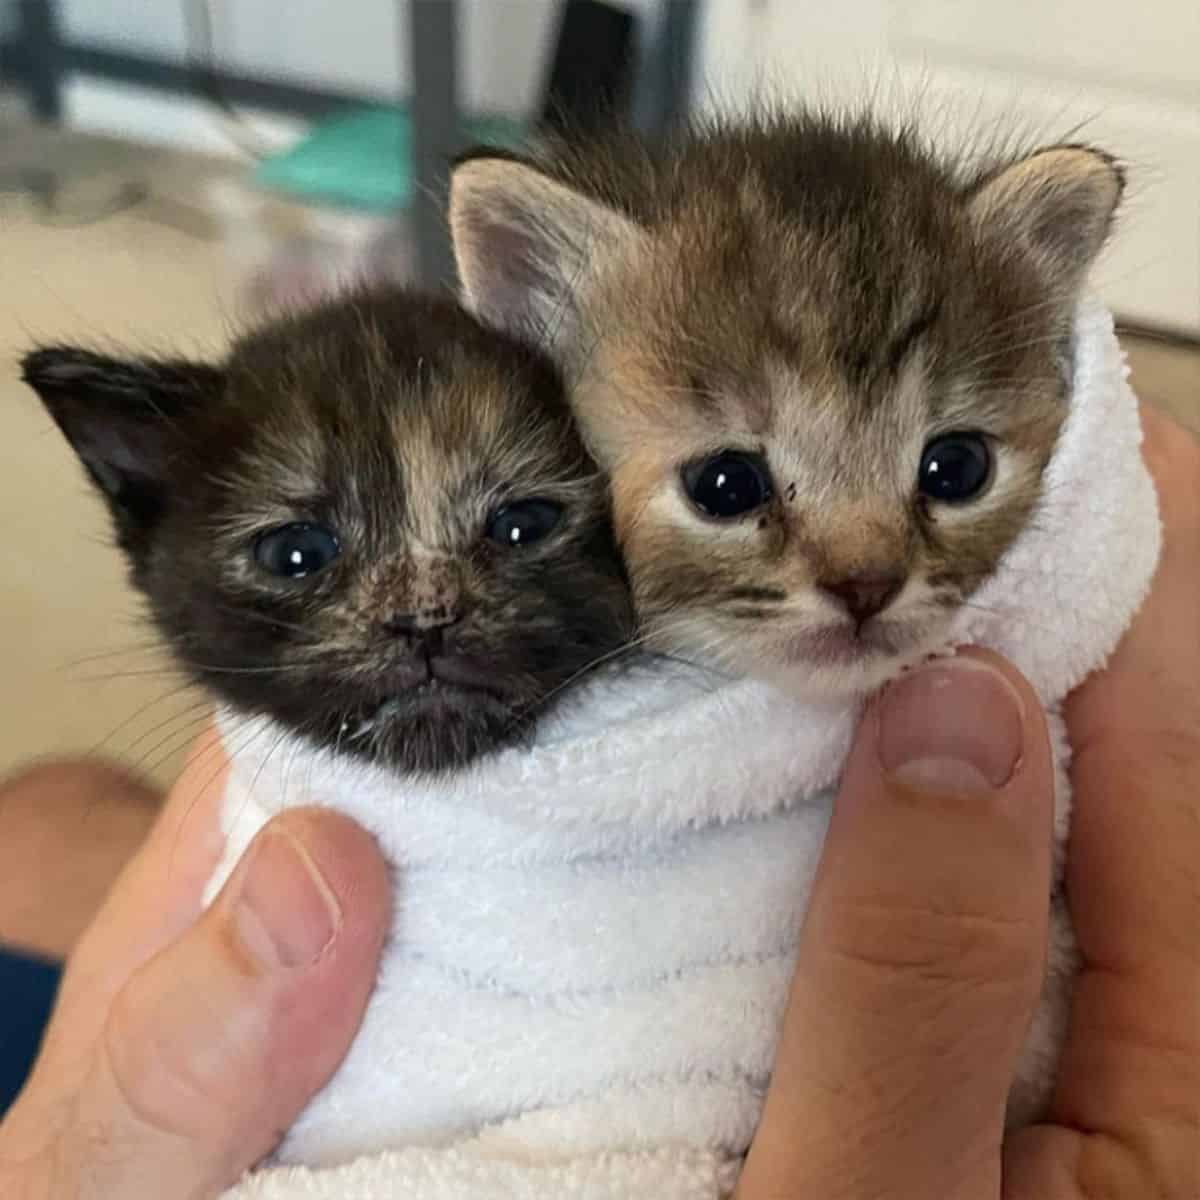 Two little kitten in blanket